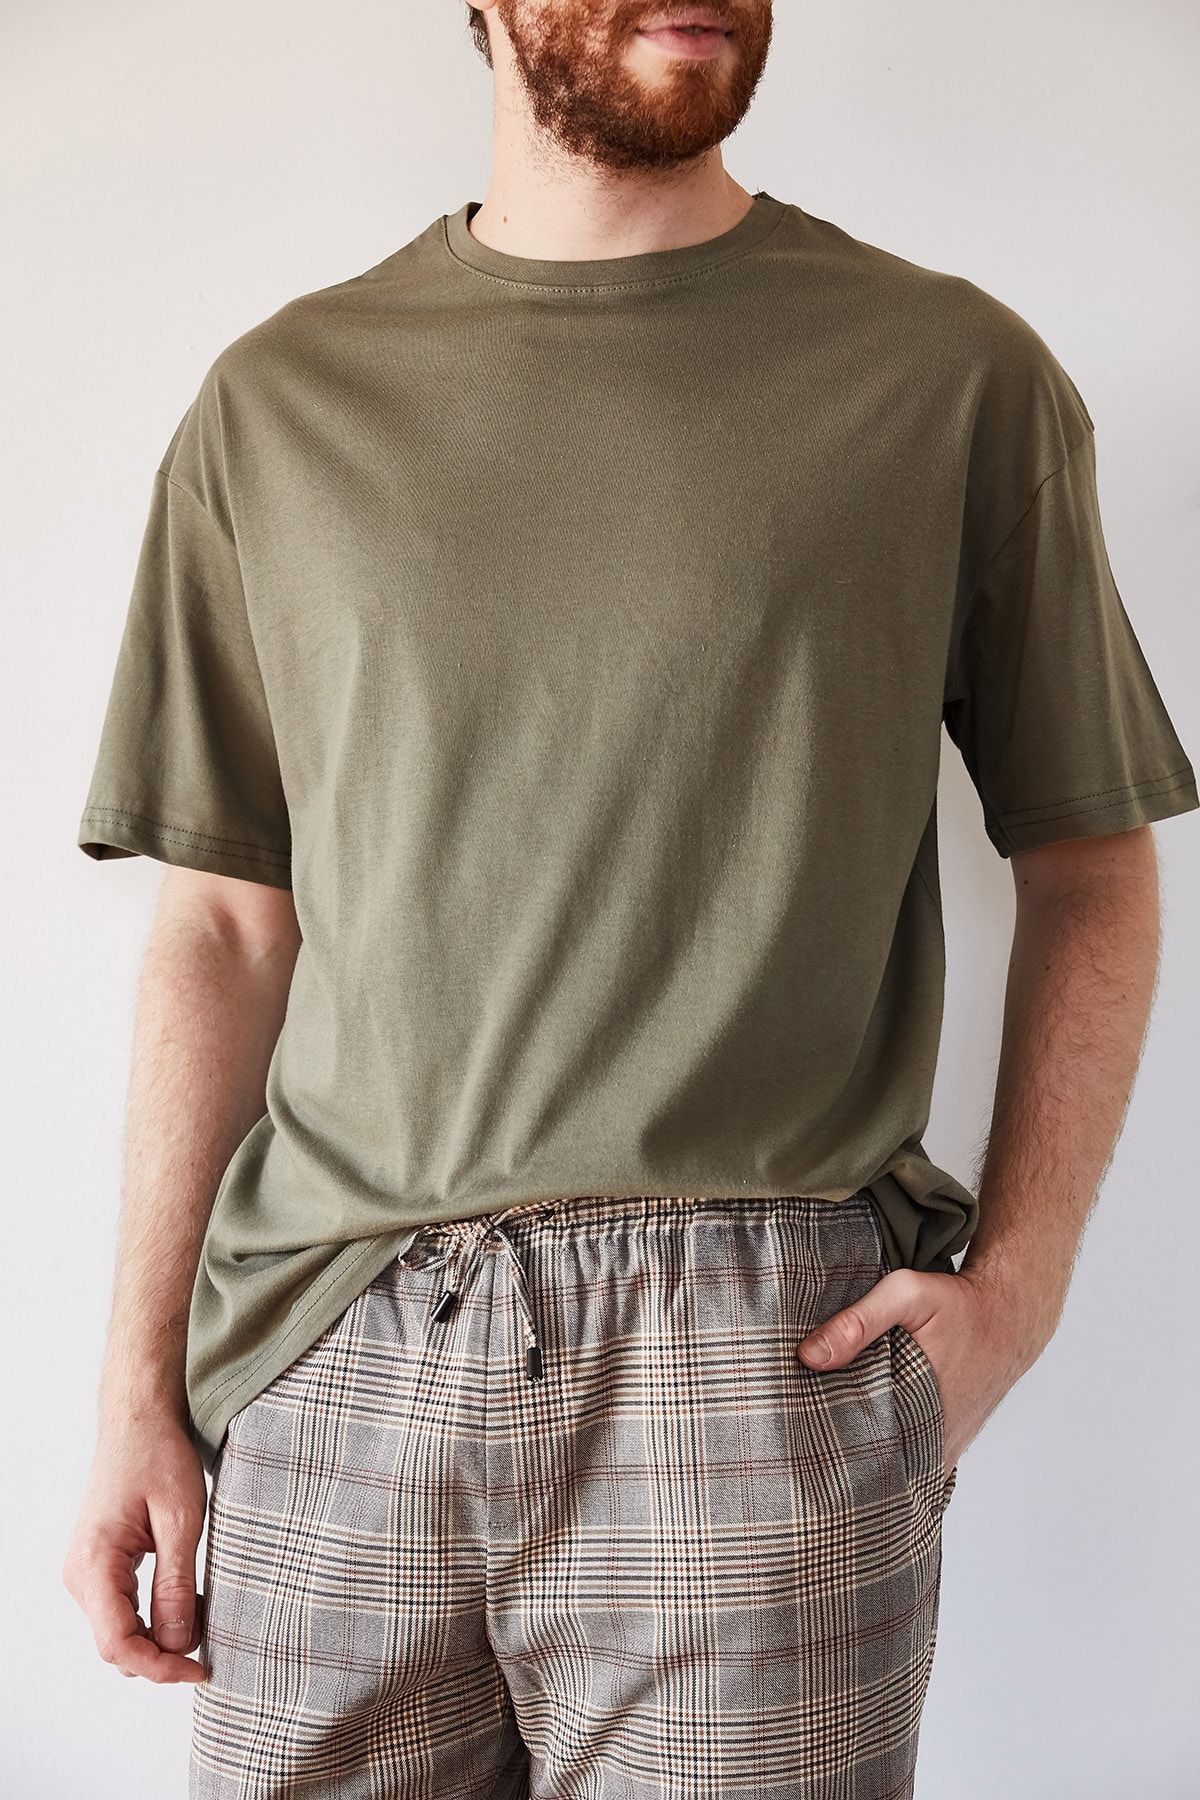 XHAN Erkek Haki Basic Bol Kesim Oversize T-shirt 1kxe1-44215-09